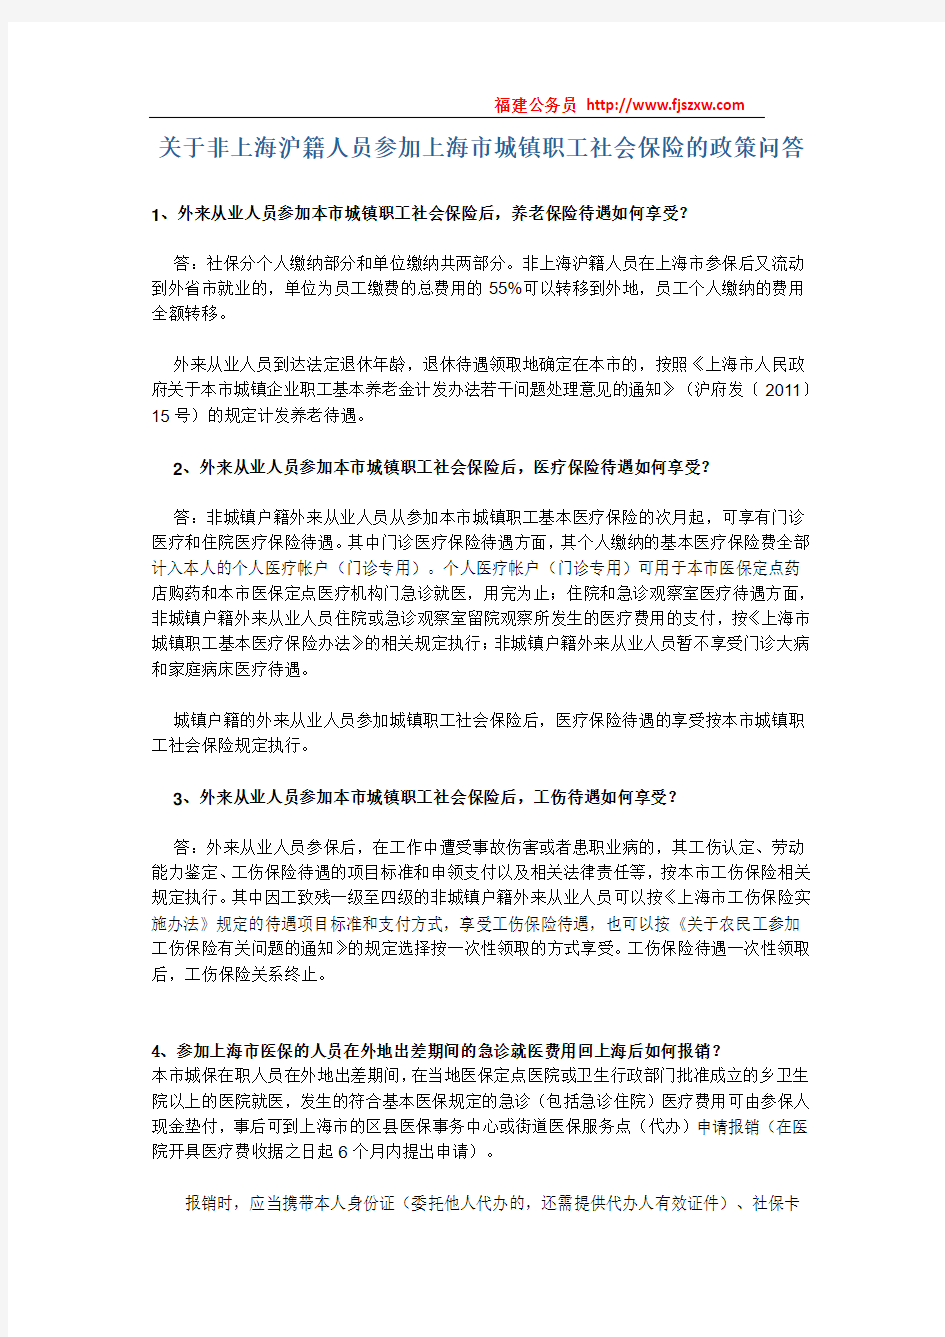 关于非上海沪籍人员参加上海市城镇职工社会保险的政策问答